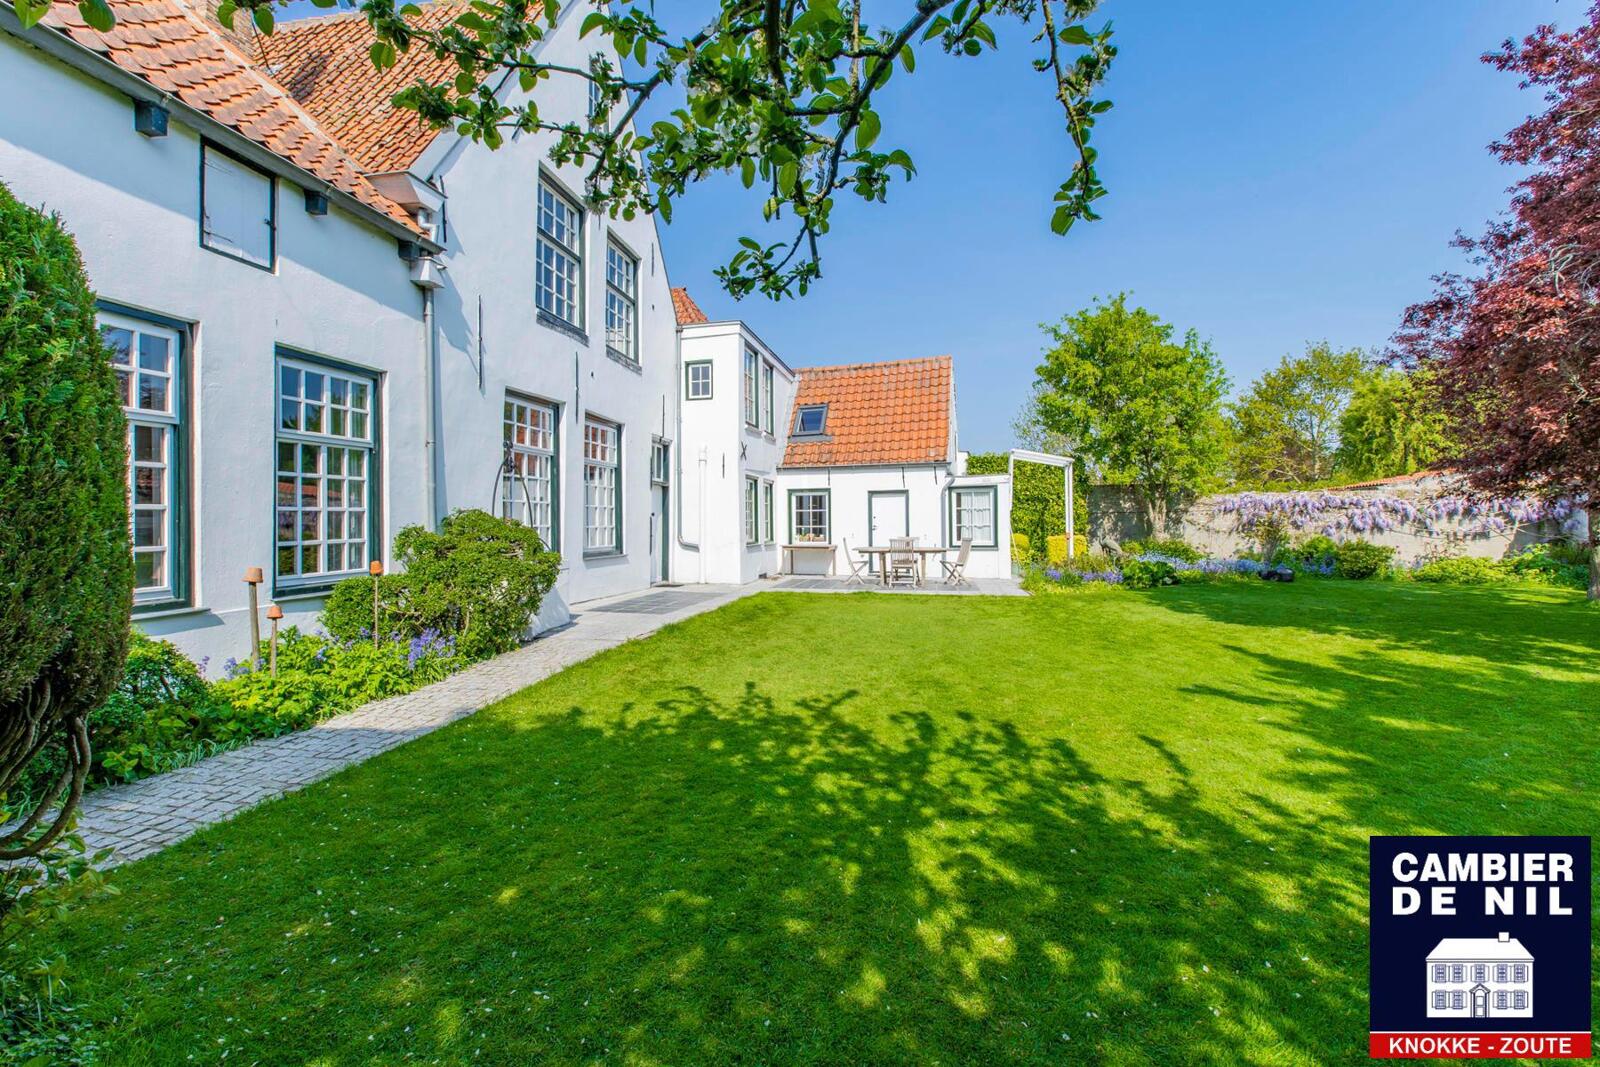 Maison très charmante située entre Sluis et Knokke 24